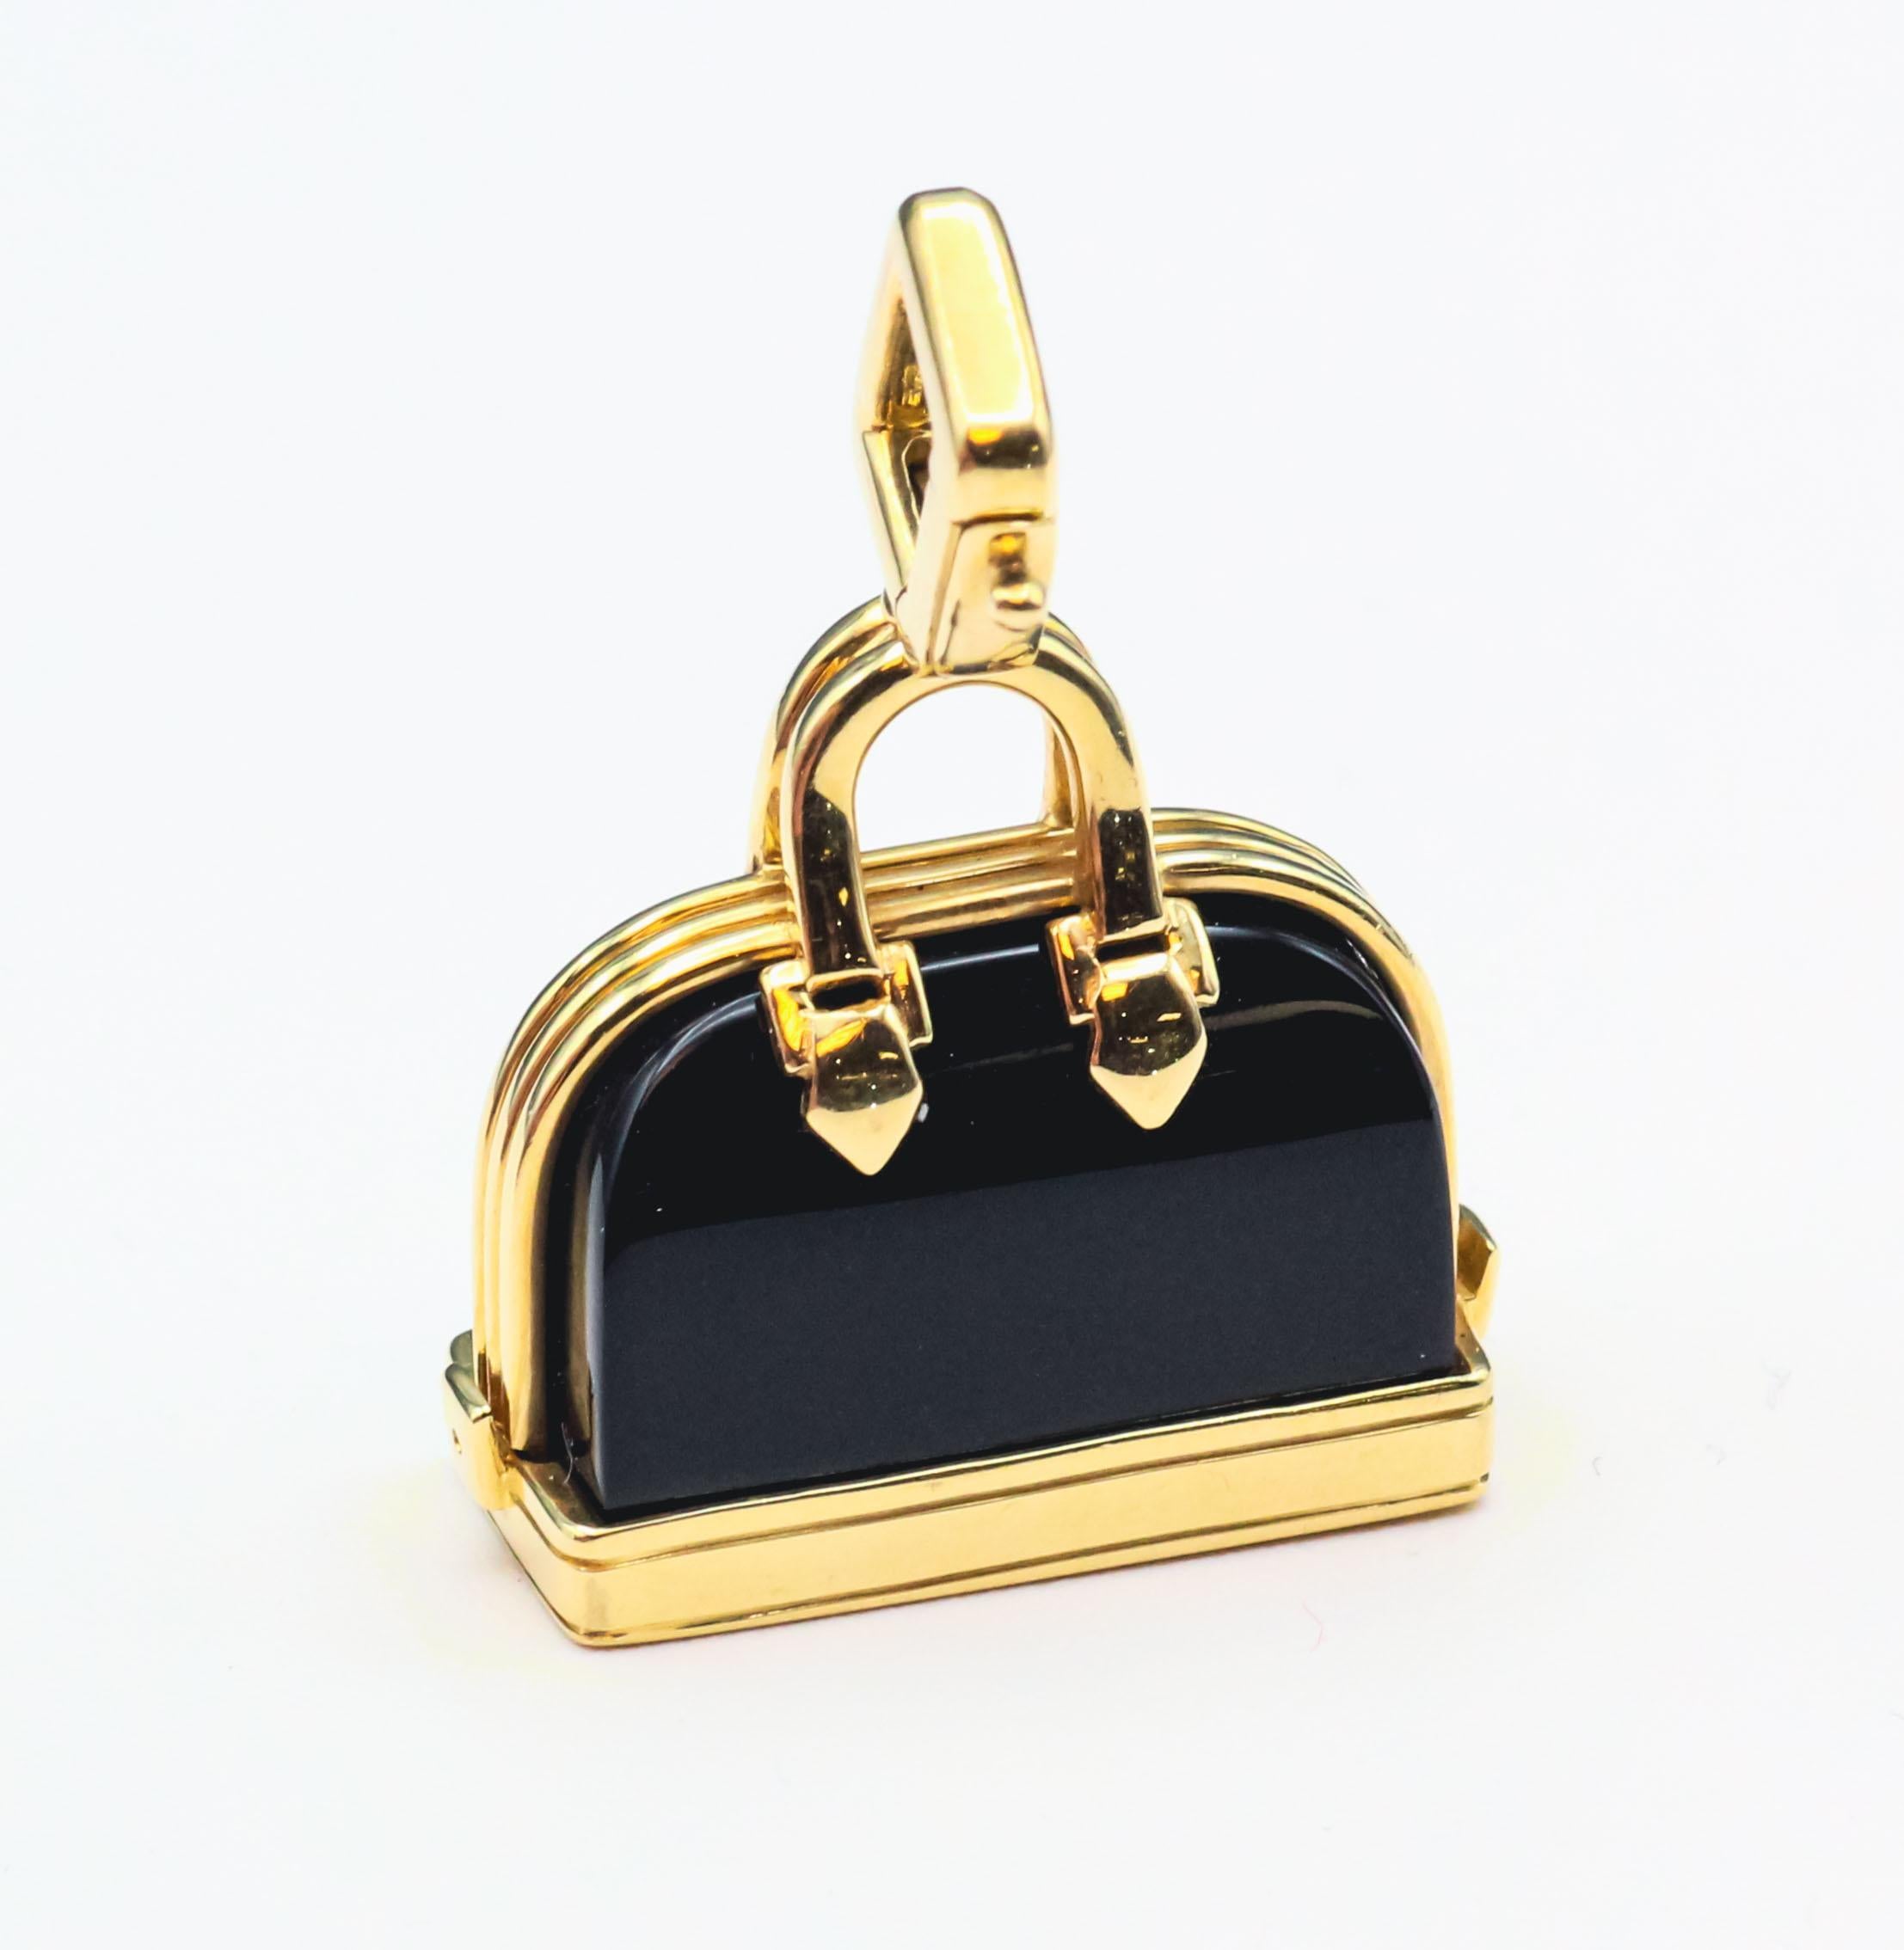 Erhöhen Sie Ihren Stil mit diesem modernen Louis Vuitton Onyx und 18k Gelbgold Alma Bag Charm Anhänger. Dieses exquisite Stück verbindet nahtlos modernen Luxus mit der zeitlosen Eleganz von Louis Vuitton und unterstreicht die Hingabe der Marke für